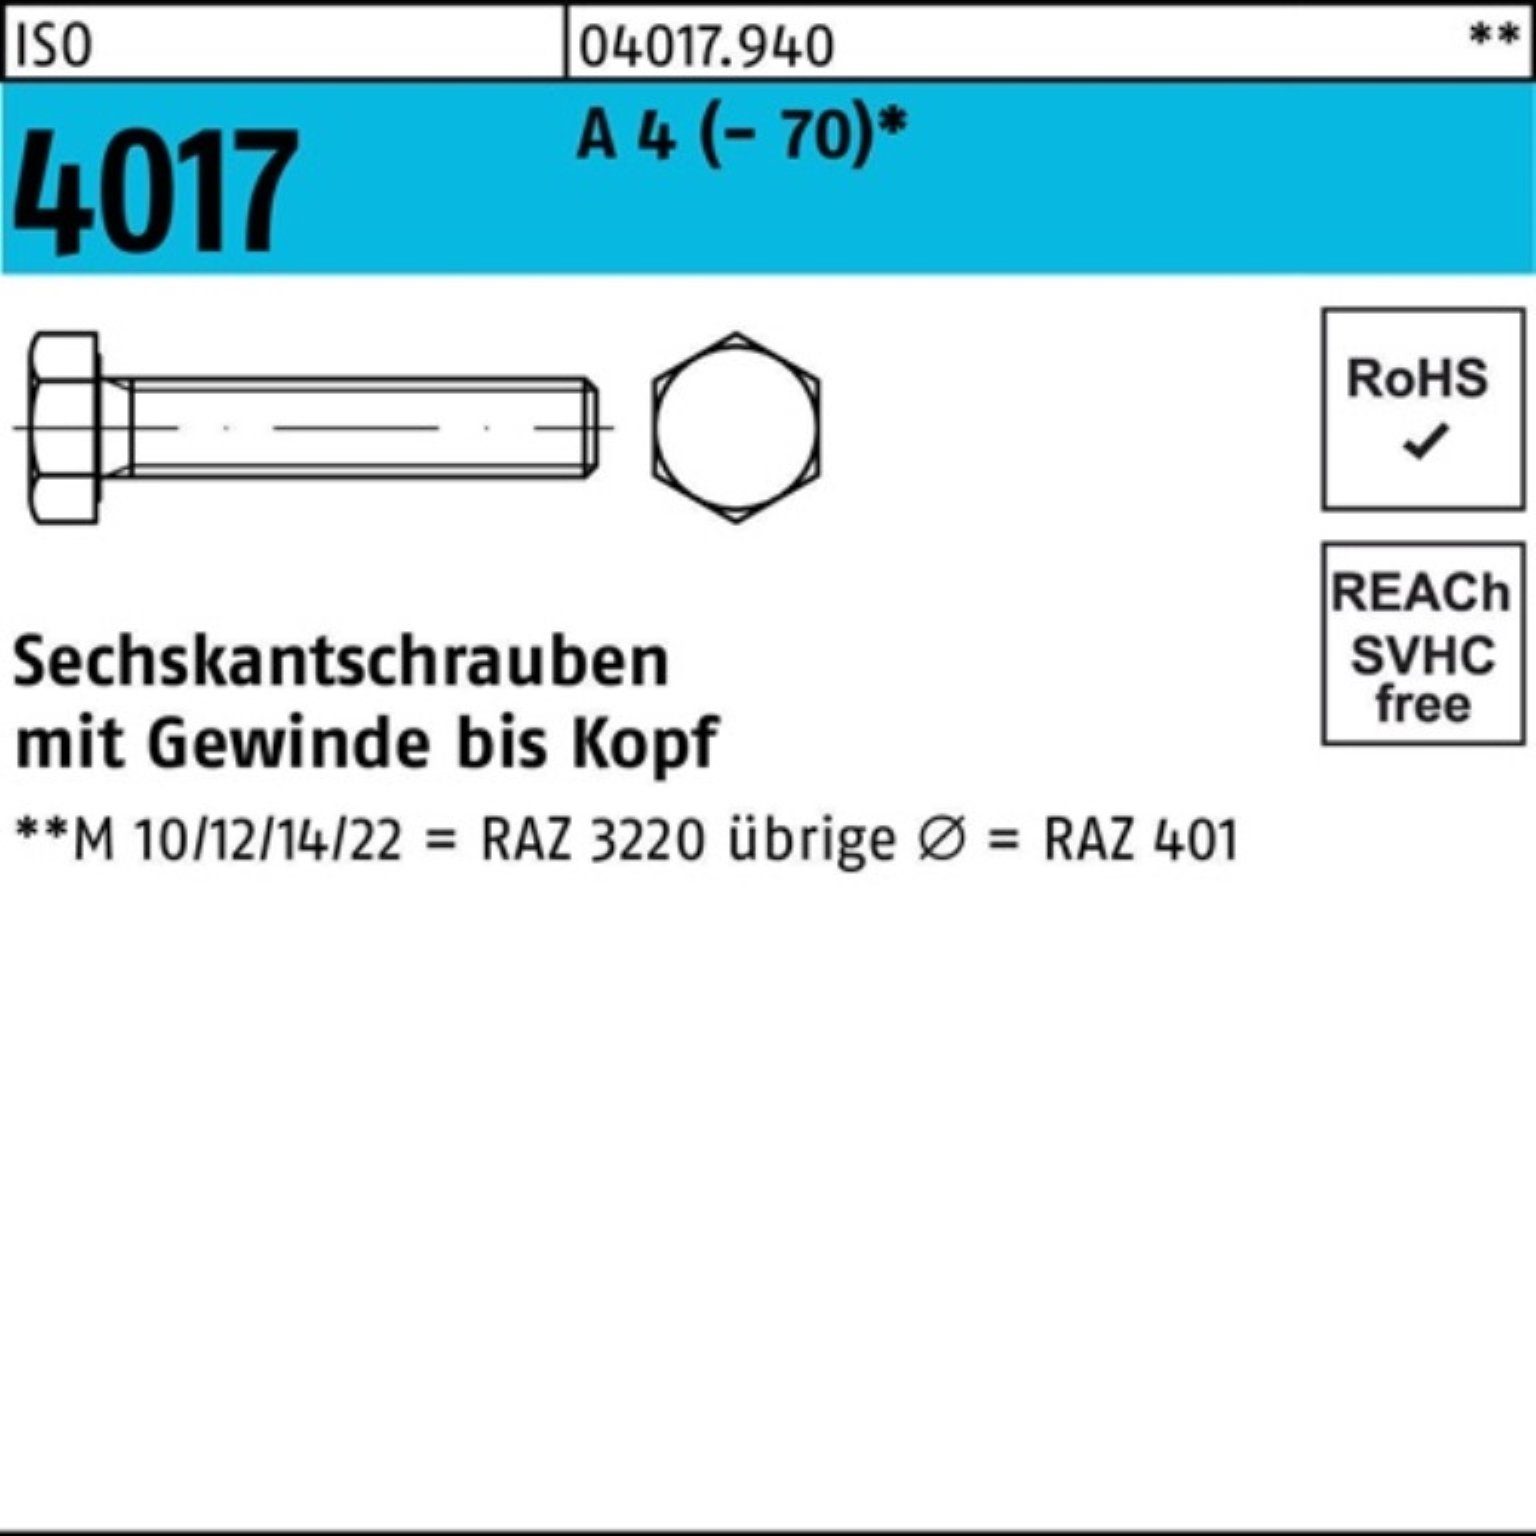 Bufab Sechskantschraube 100er 160 4017 ISO M20x (70) 4 Sechskantschraube A Pack Stück 1 VG